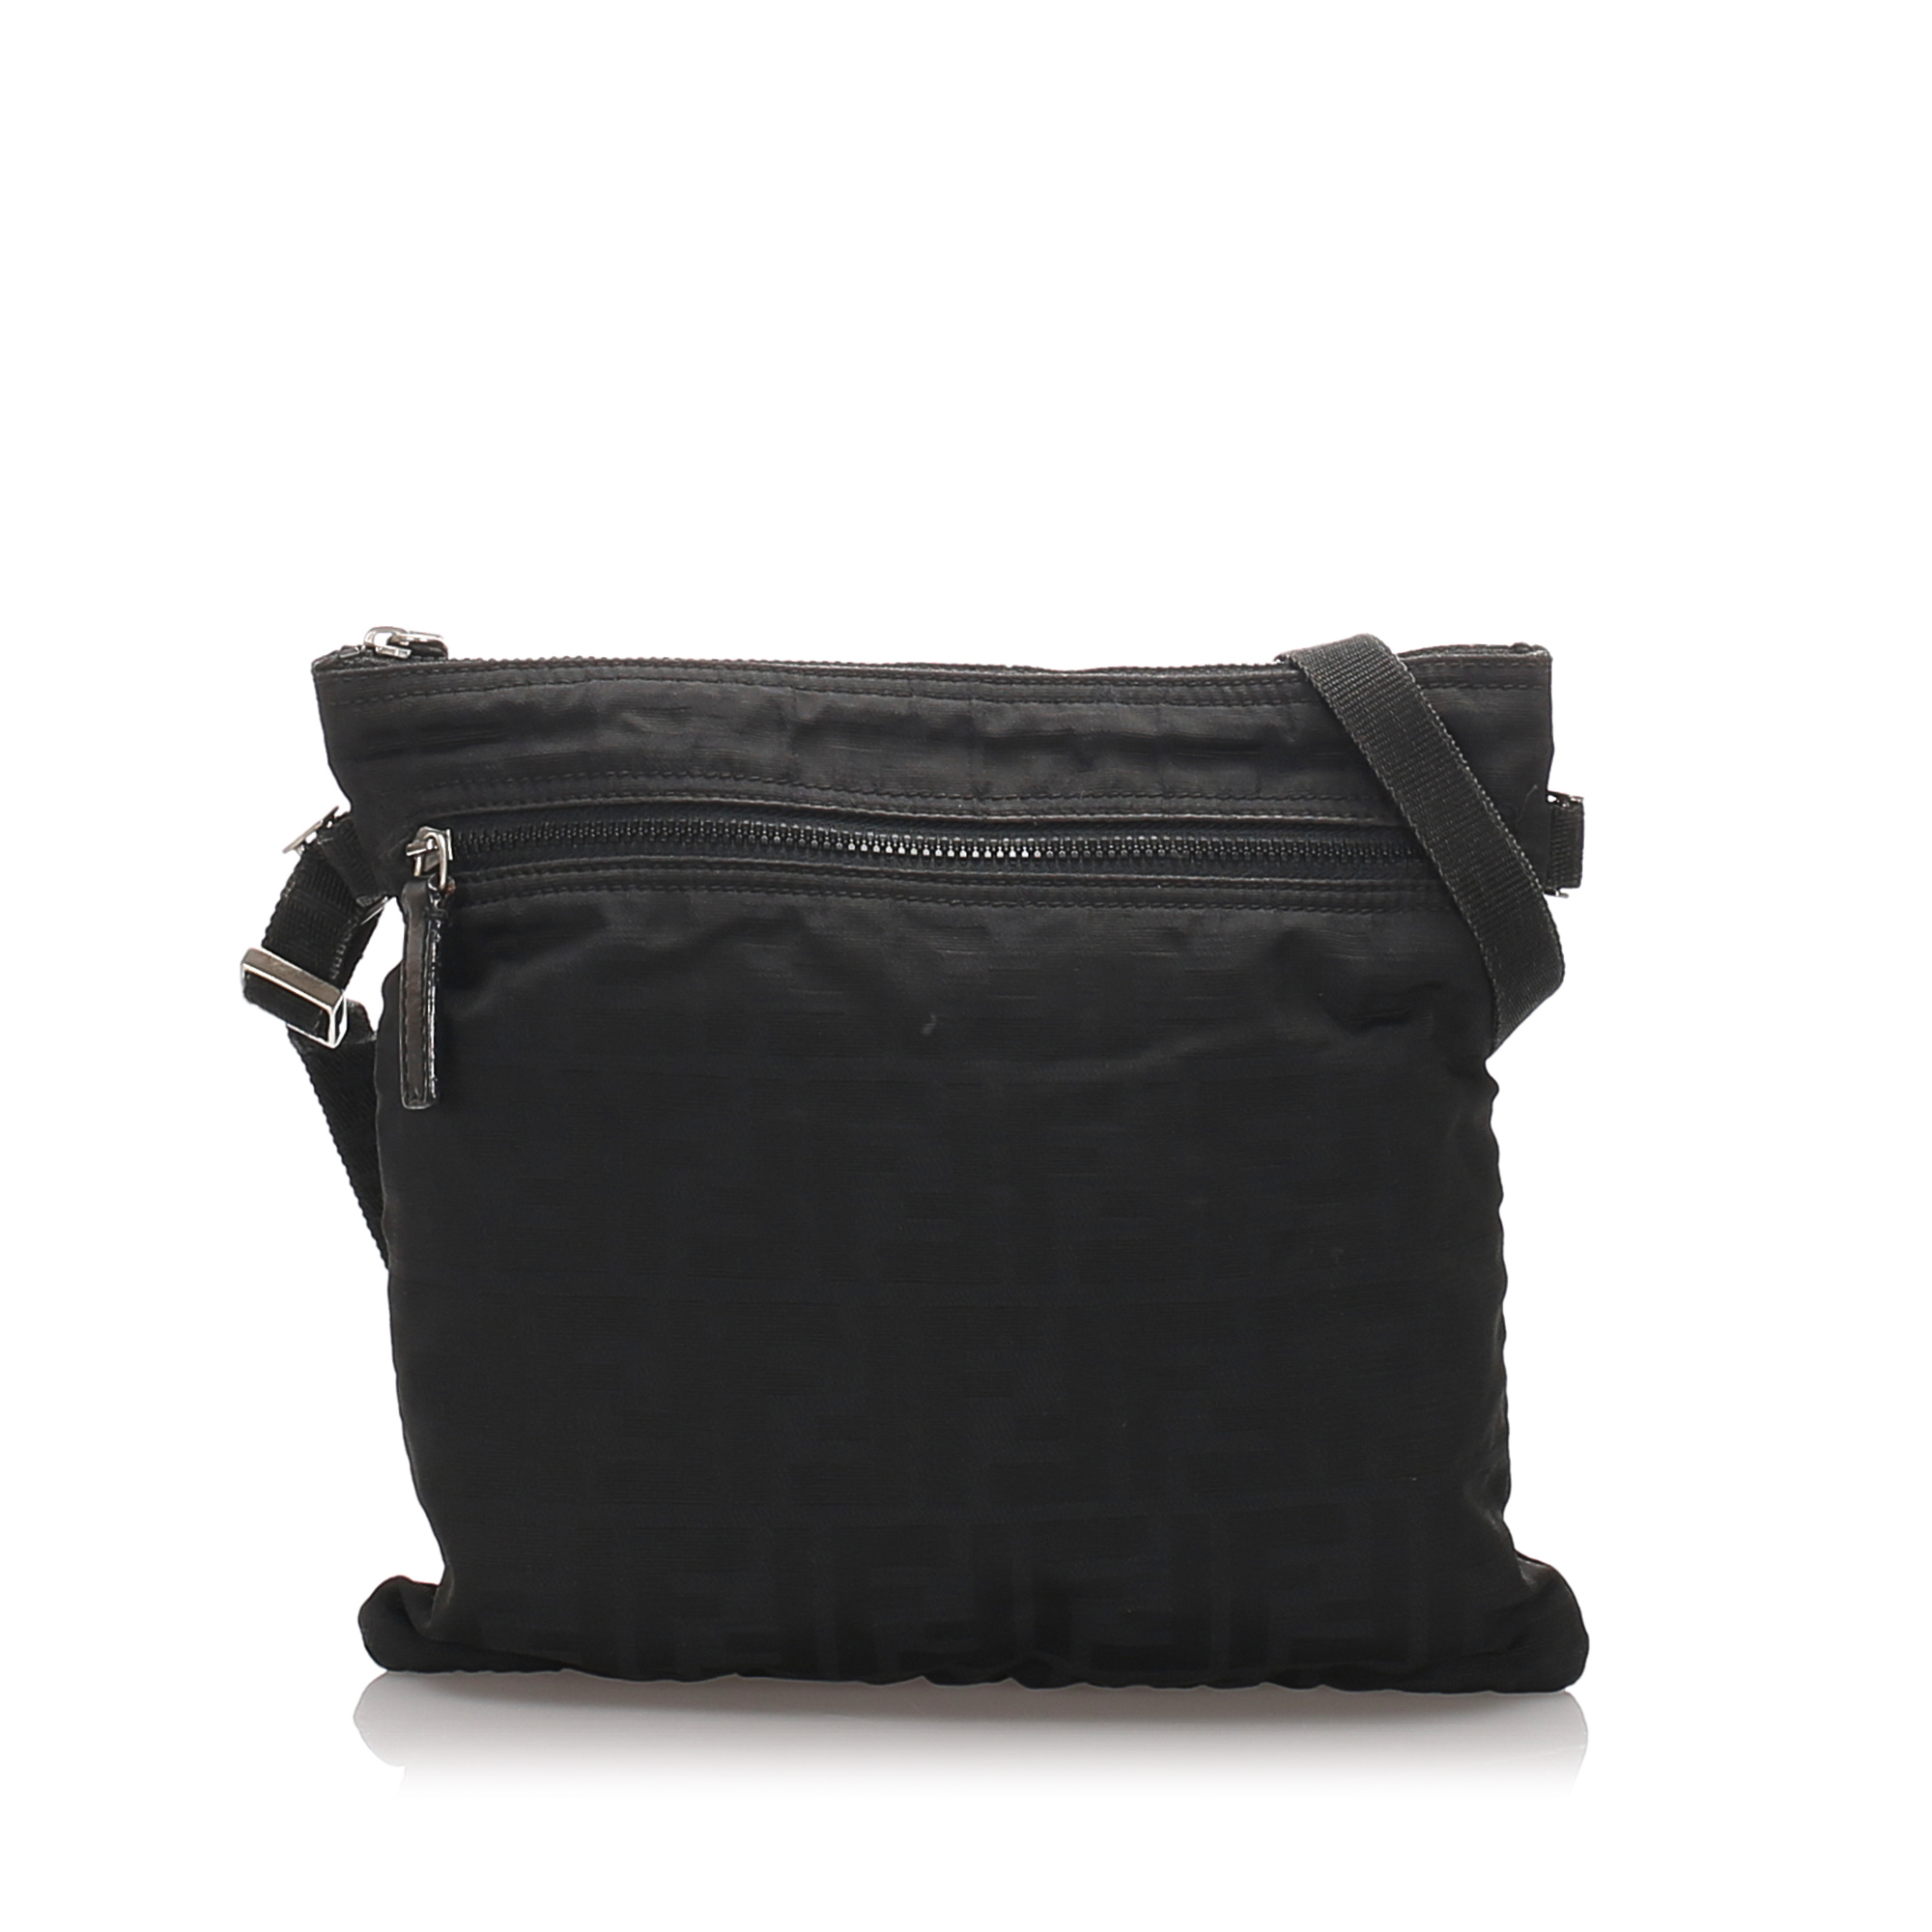 Pre-Loved Fendi Black Nylon Fabric Zucca Crossbody Bag Italy | eBay